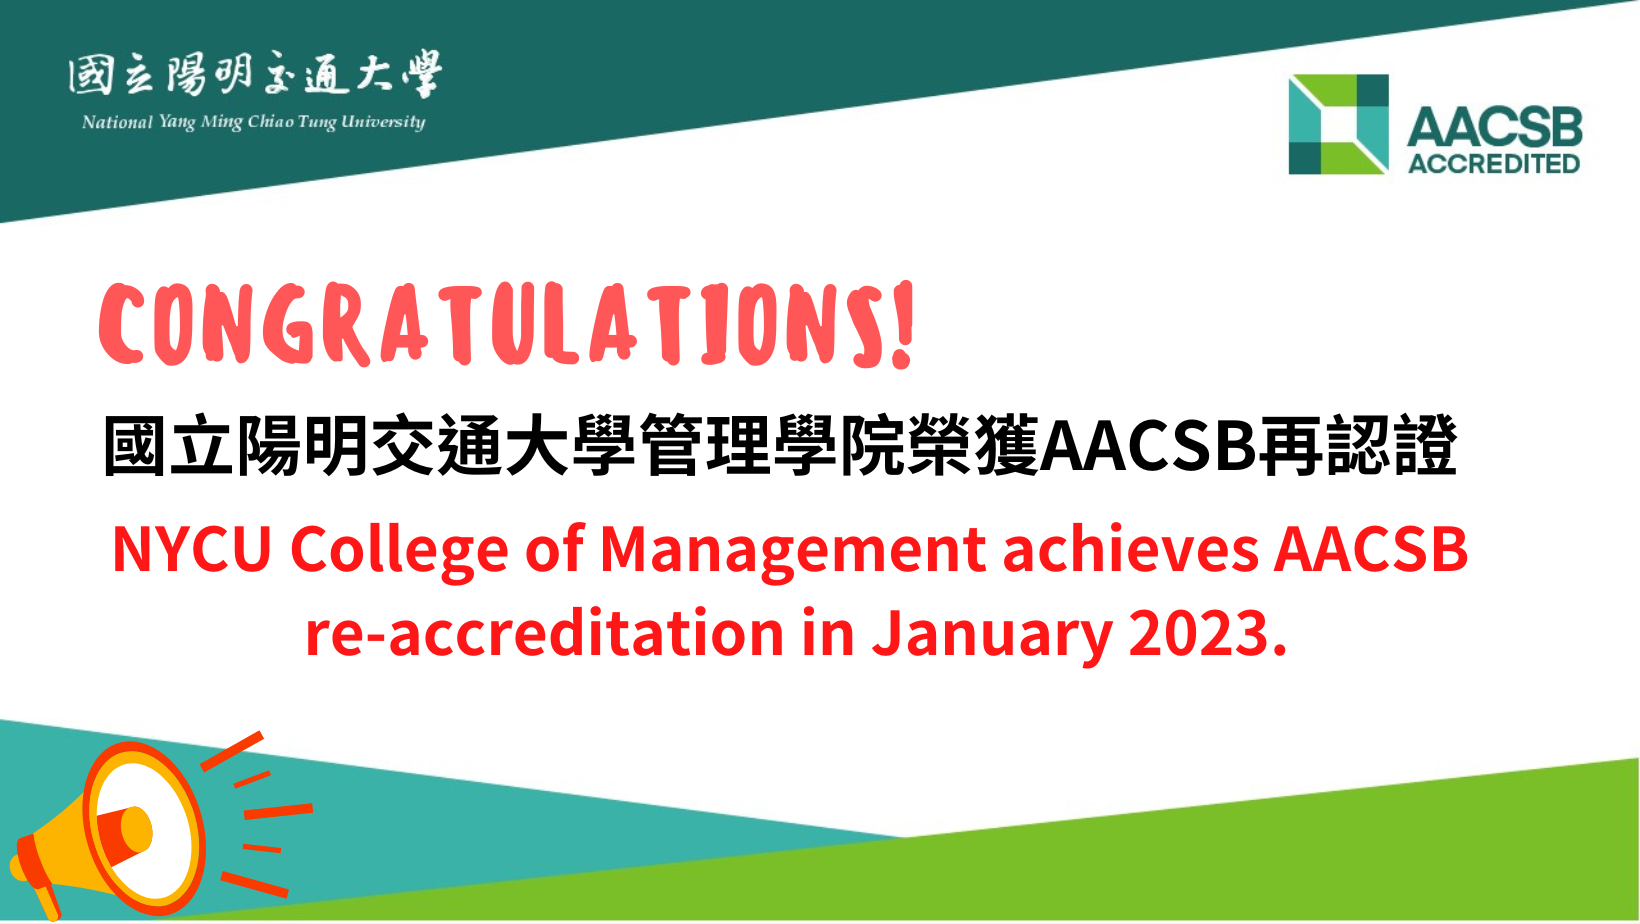 恭賀!國立陽明交通大學管理學院再次通過AACSB五年維持認證